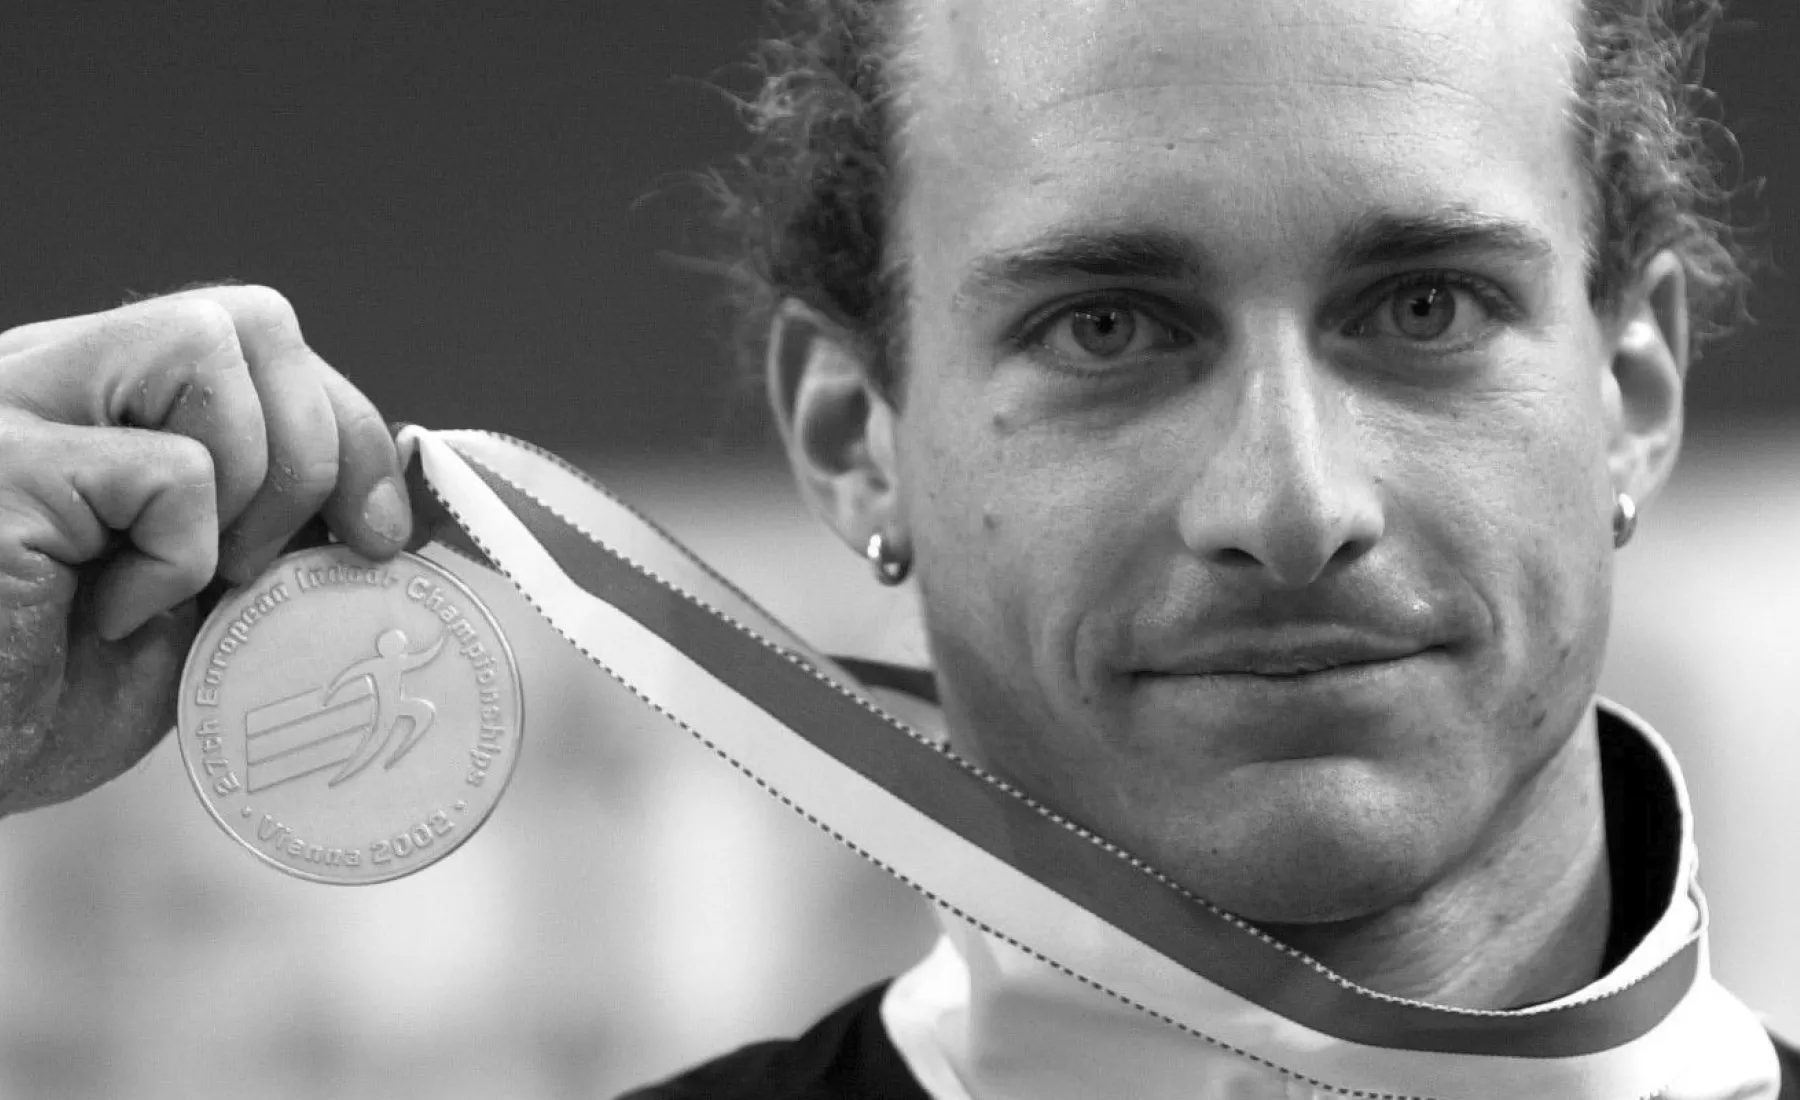 Der deutsche Stabhochspringer Tim Lobinger zeigt am Samstag (02.03.2002) im Ferry-Dusika Stadion in Wien bei den Leichtathletik-Hallen-Europameisterschaften nach der Siegerehrung seine Medaille.